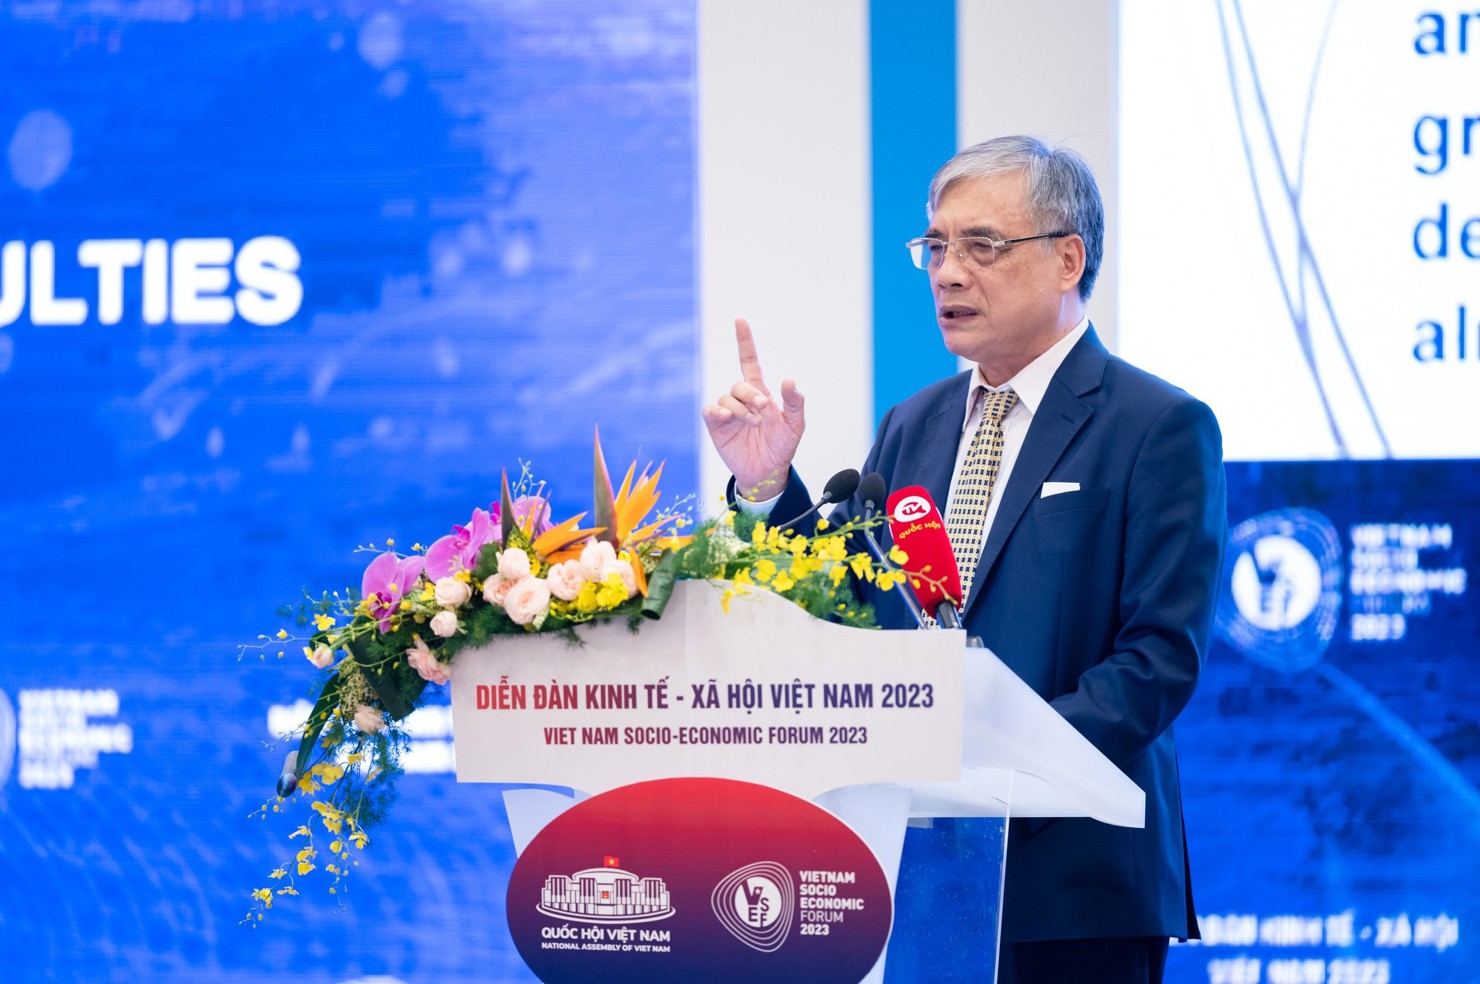 PGS. TS. Trần Đình Thiên - Nguyên Viện trưởng Viện Kinh tế Việt Nam phát biểu tại Diễn đàn Kinh tế - Xã hội năm 2023.